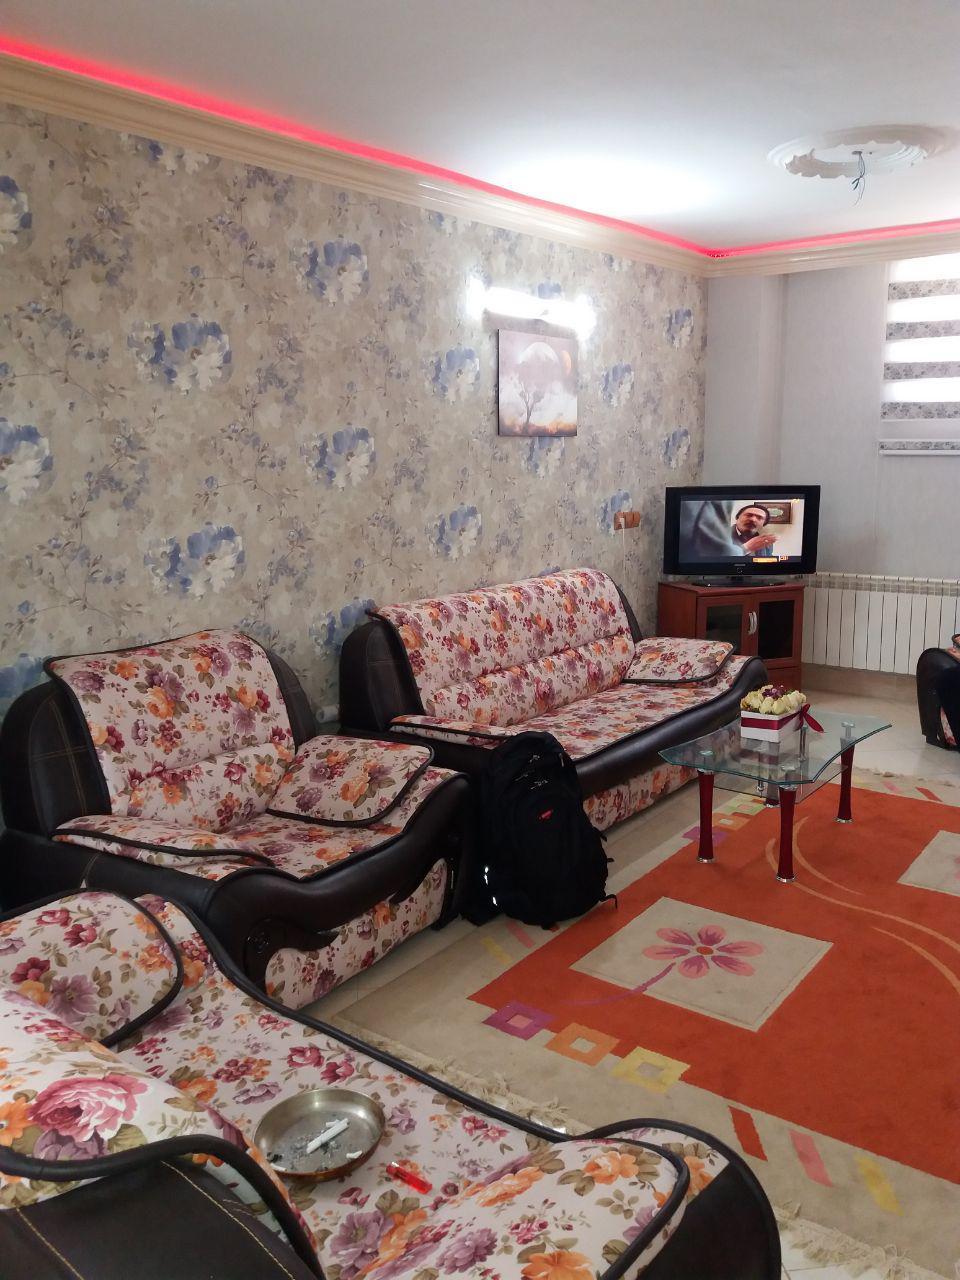 اجاره آپارتمان در اصفهان مرکز شهر